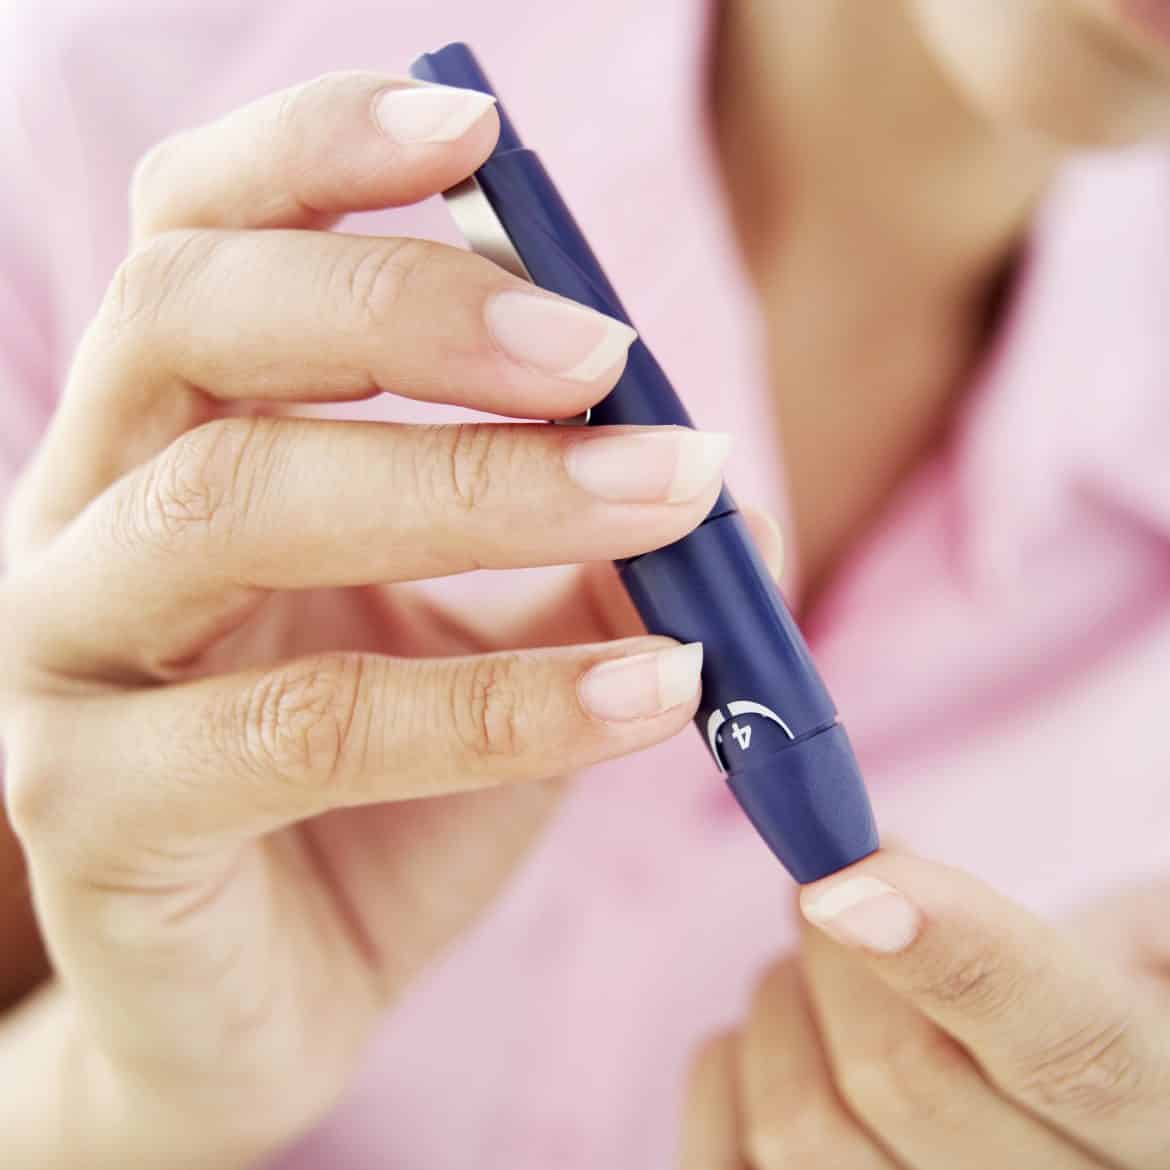 2. risiko terkena diabetes meningkat